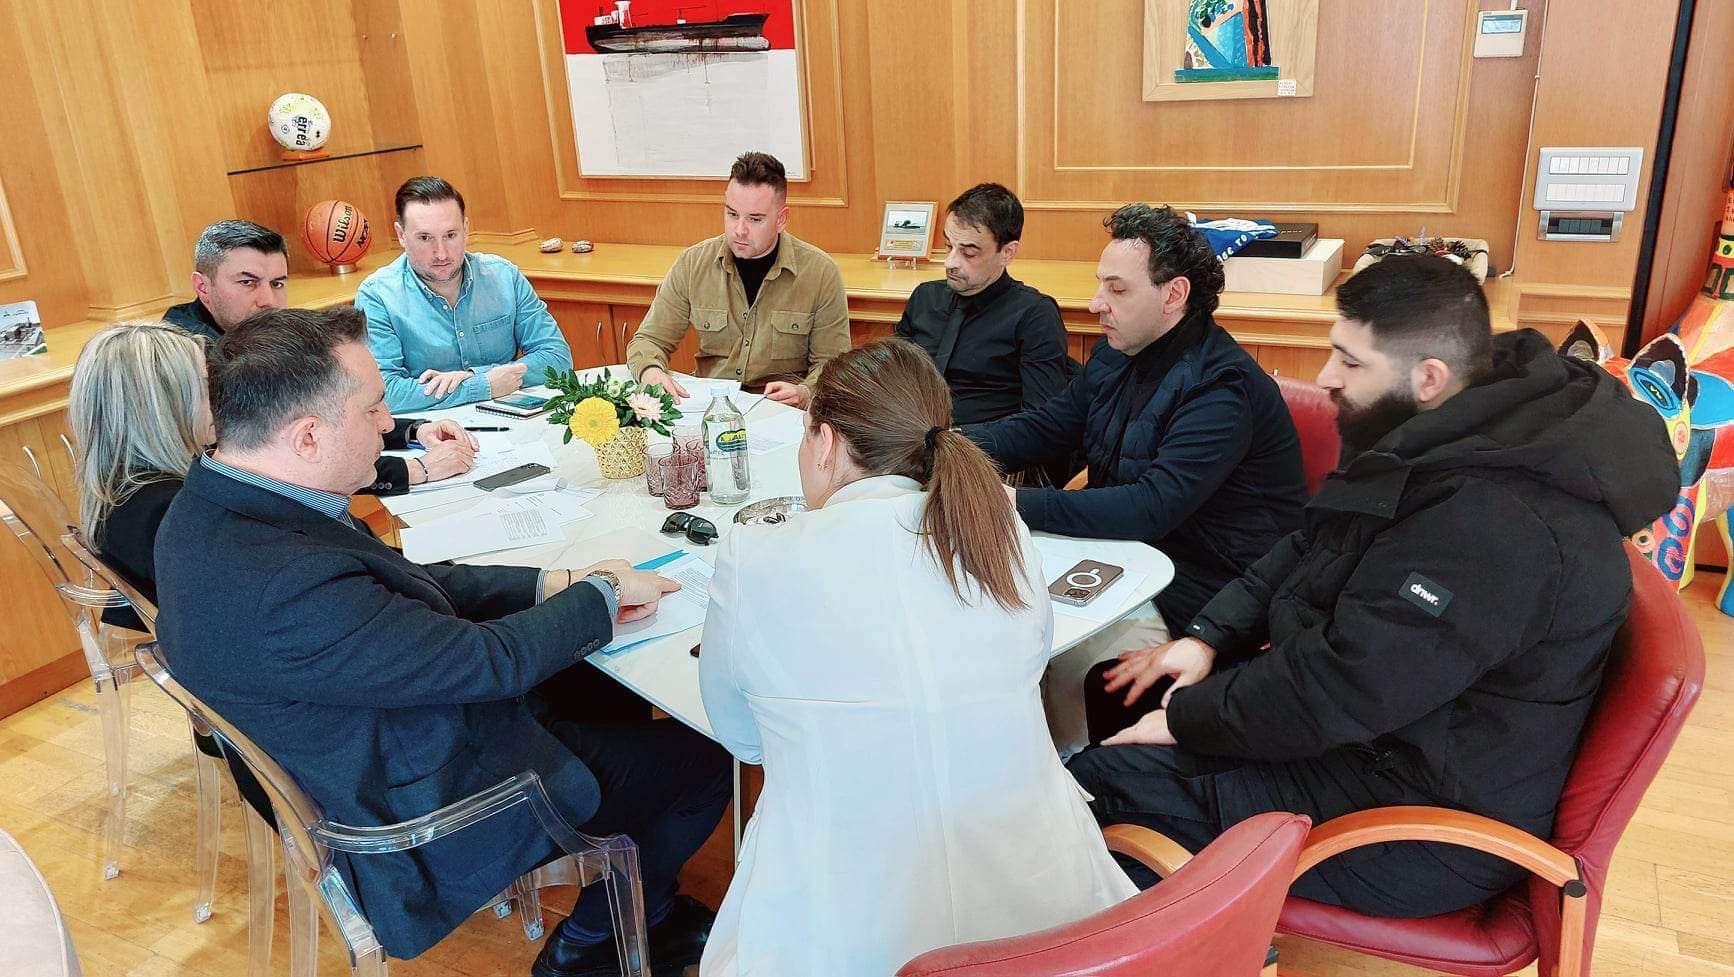 Συνάντηση εργασίας με αντικείμενο το σχέδιο τουριστικής προβολής του Δήμου Αλεξανδρούπολης